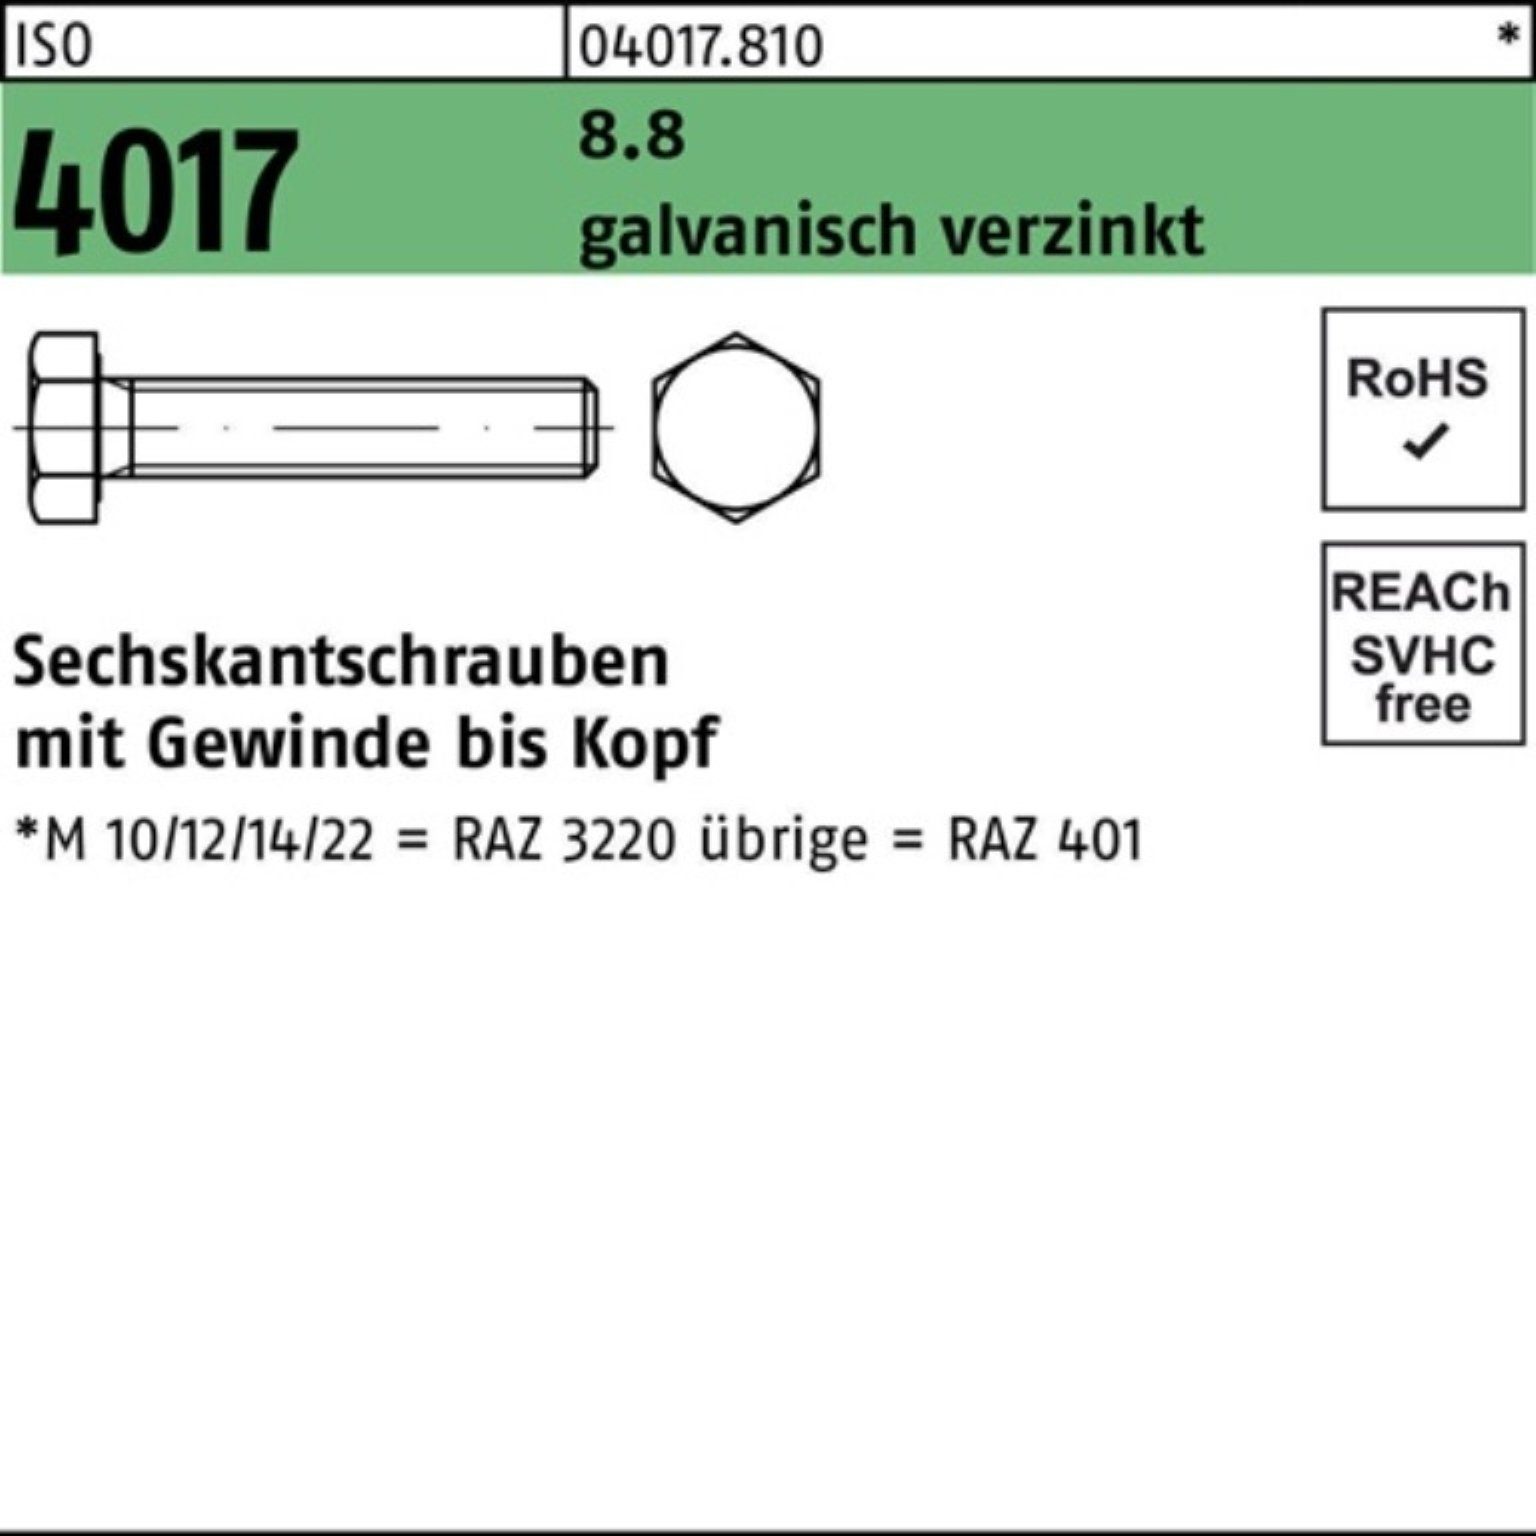 Ich habe gesammelt Bufab Sechskantschraube 100er Pack Sechskantschraube M36x VG 4017 160 ISO 1 St galv.verz. 8.8